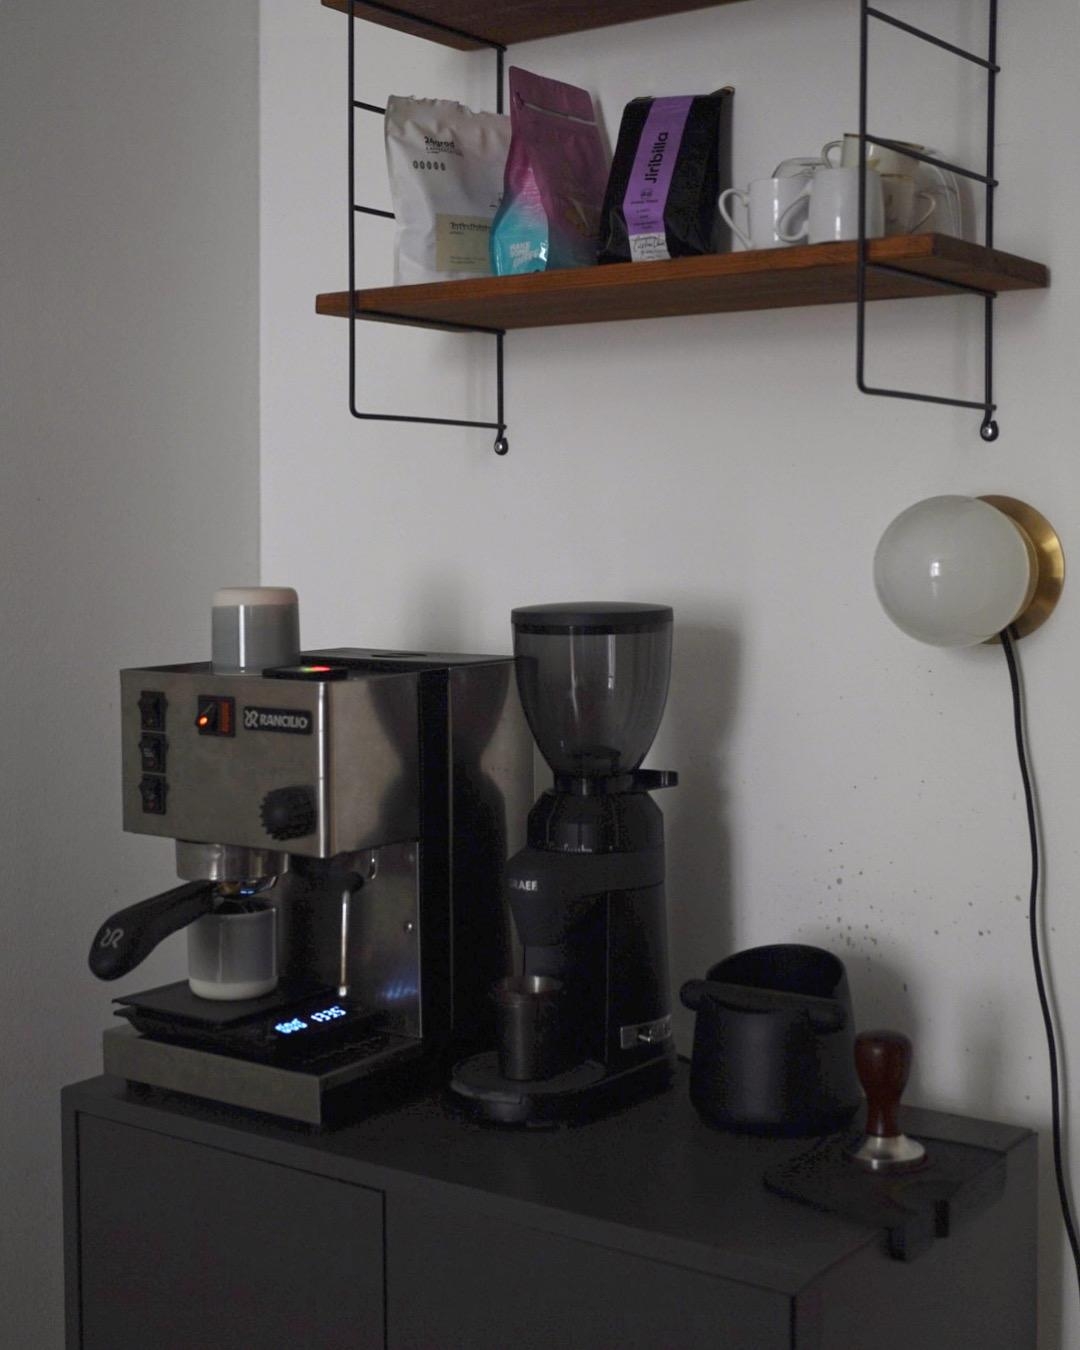 Coffee corner
#coffee #coffeecorner #coffeelover #stringregal #coffeebeans #siebträgermaschine #interior